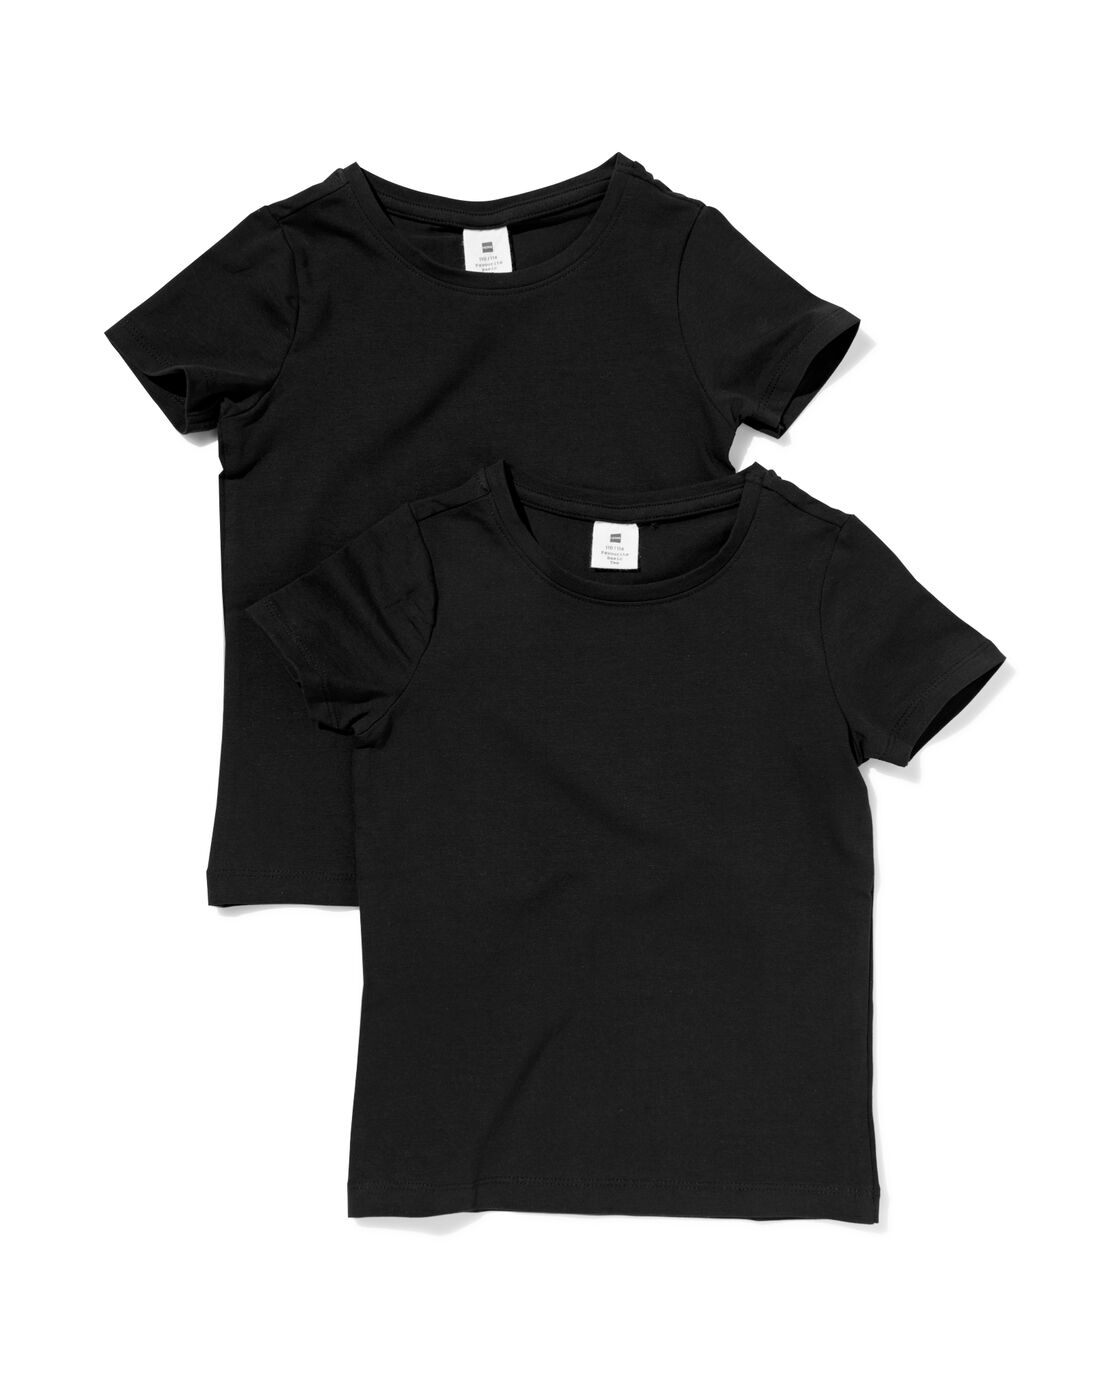 Image of HEMA Kinder T-shirts Biologisch Katoen - 2 Stuks Zwart (zwart)